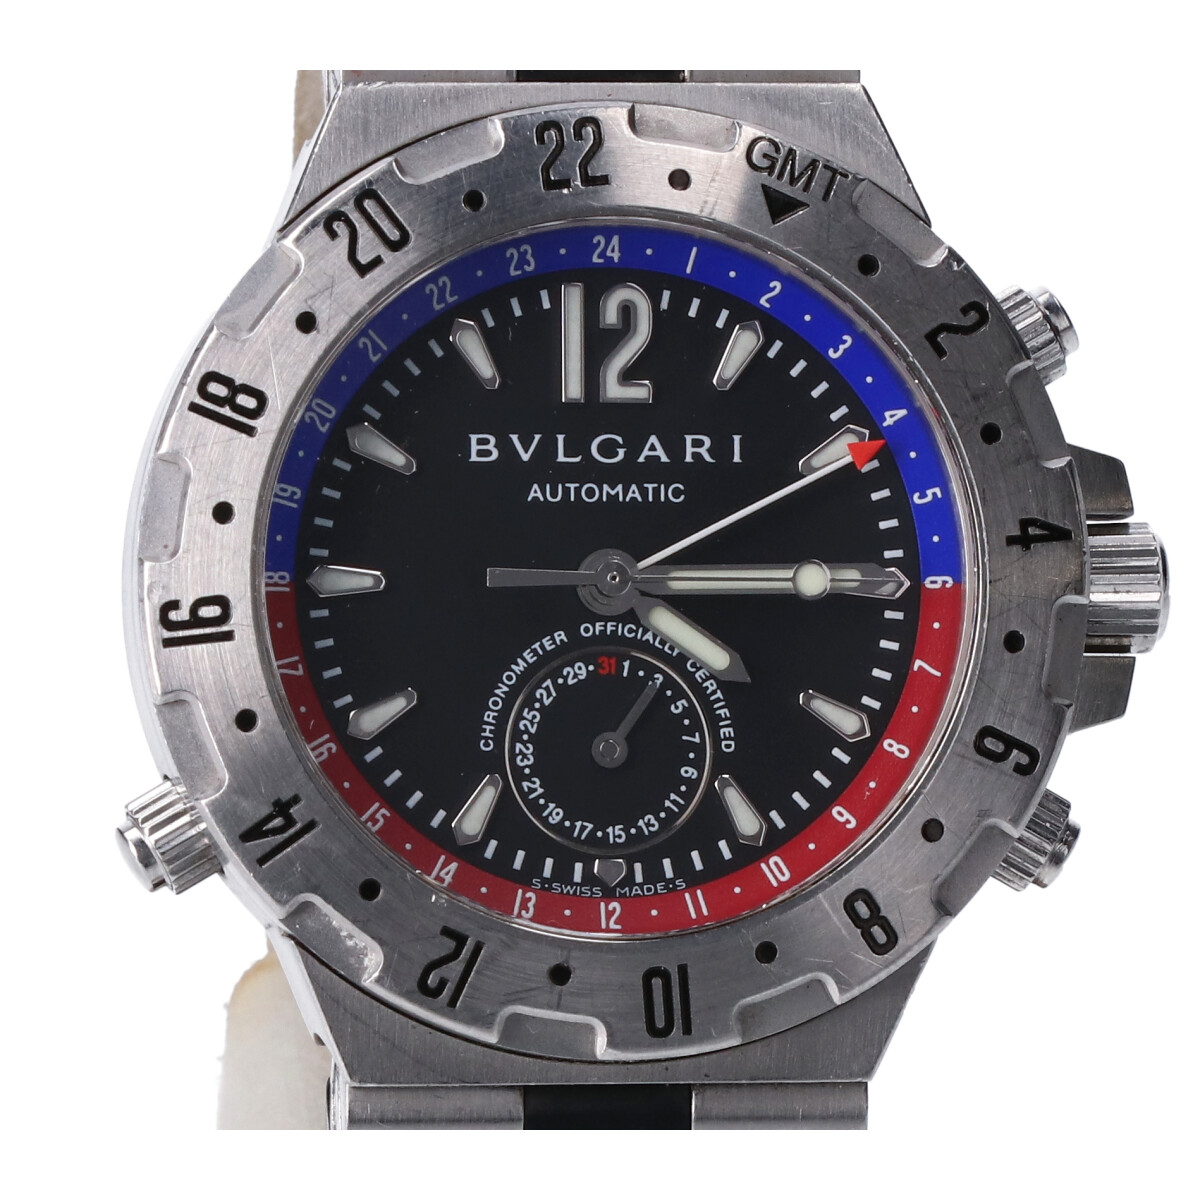 ブルガリのGMT40S ディアゴノ プロフェッショナル 自動巻き時計の買取実績です。